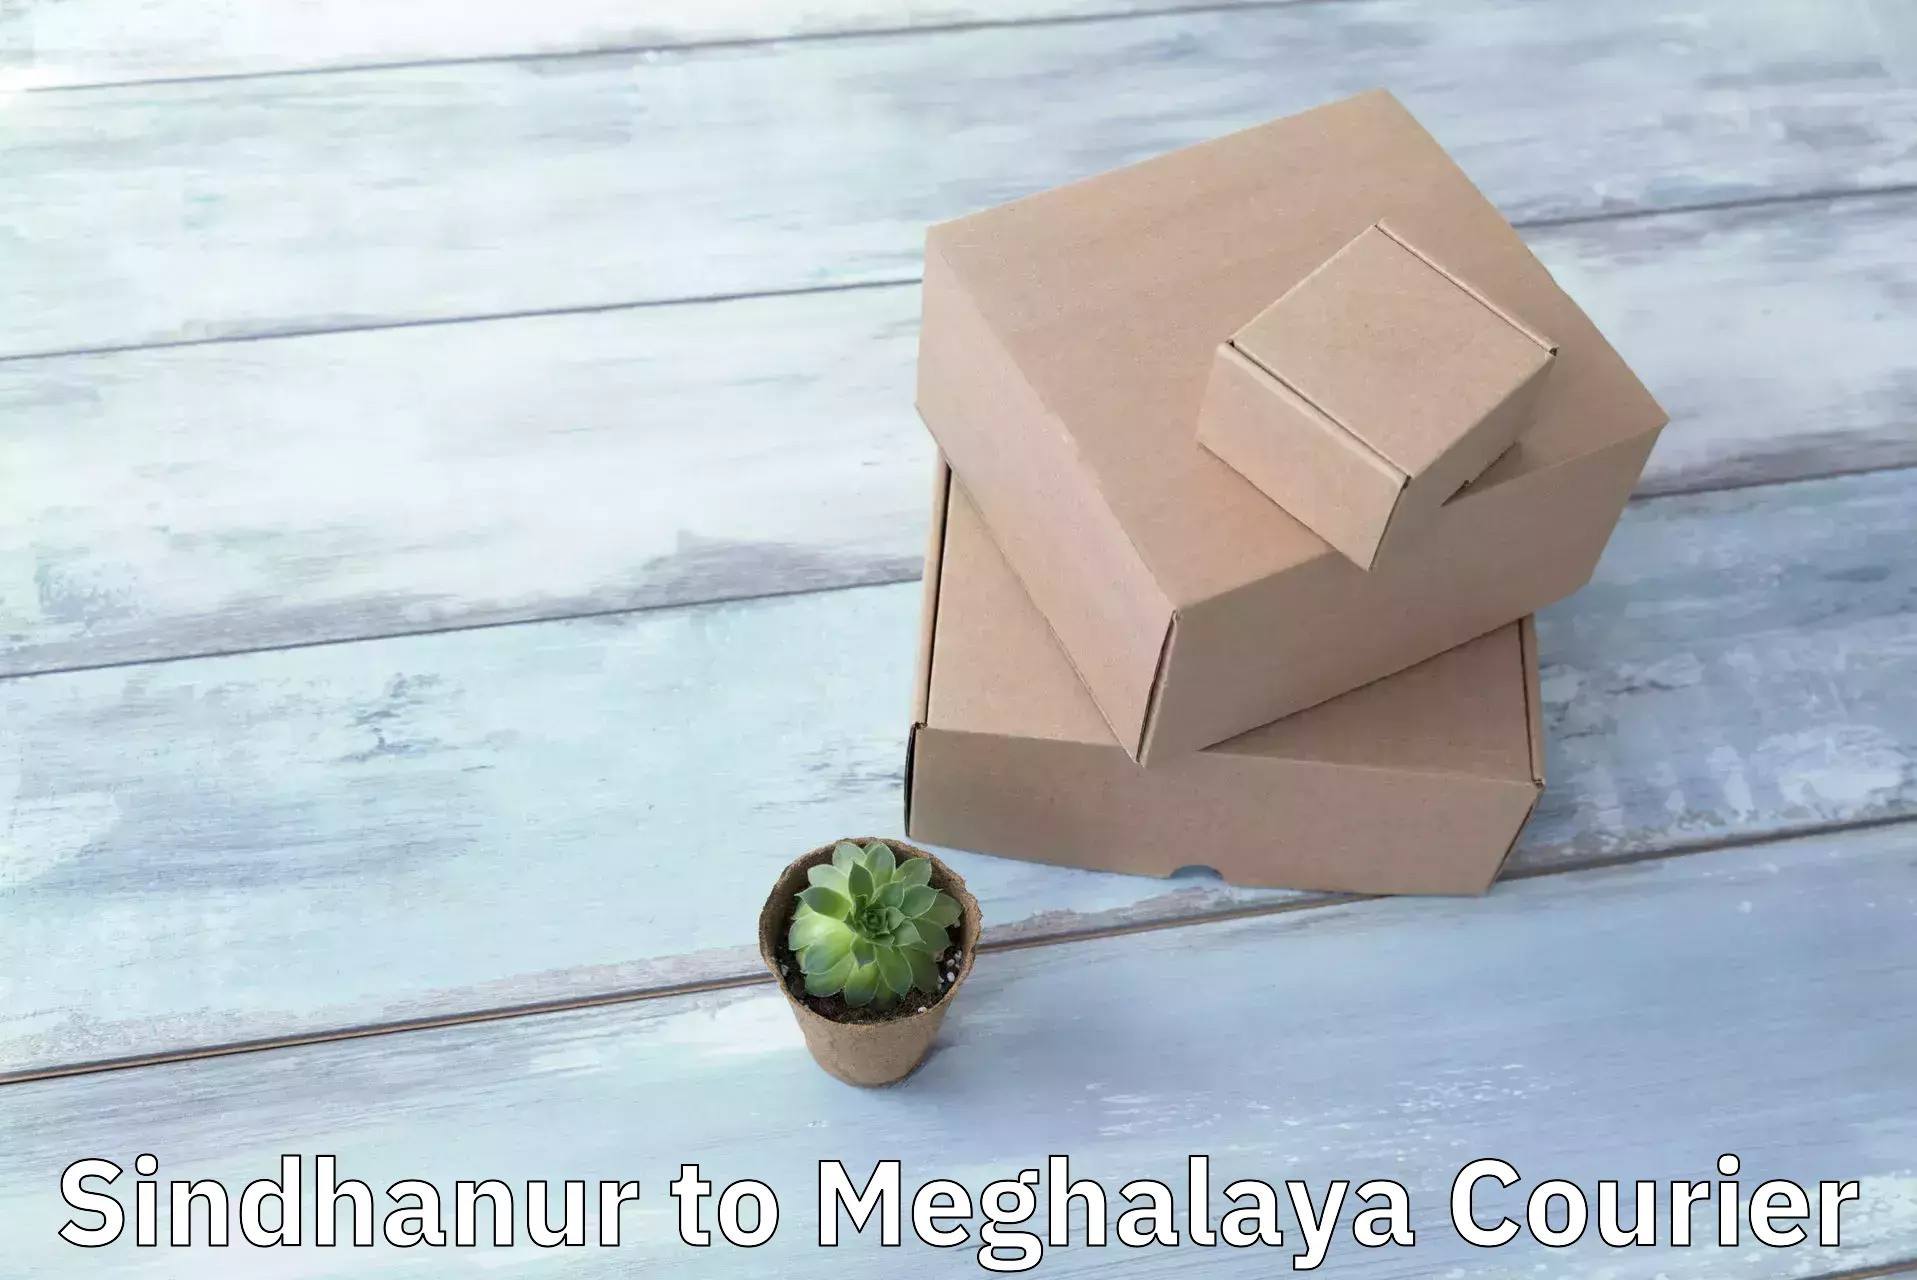 Versatile courier options Sindhanur to NIT Meghalaya